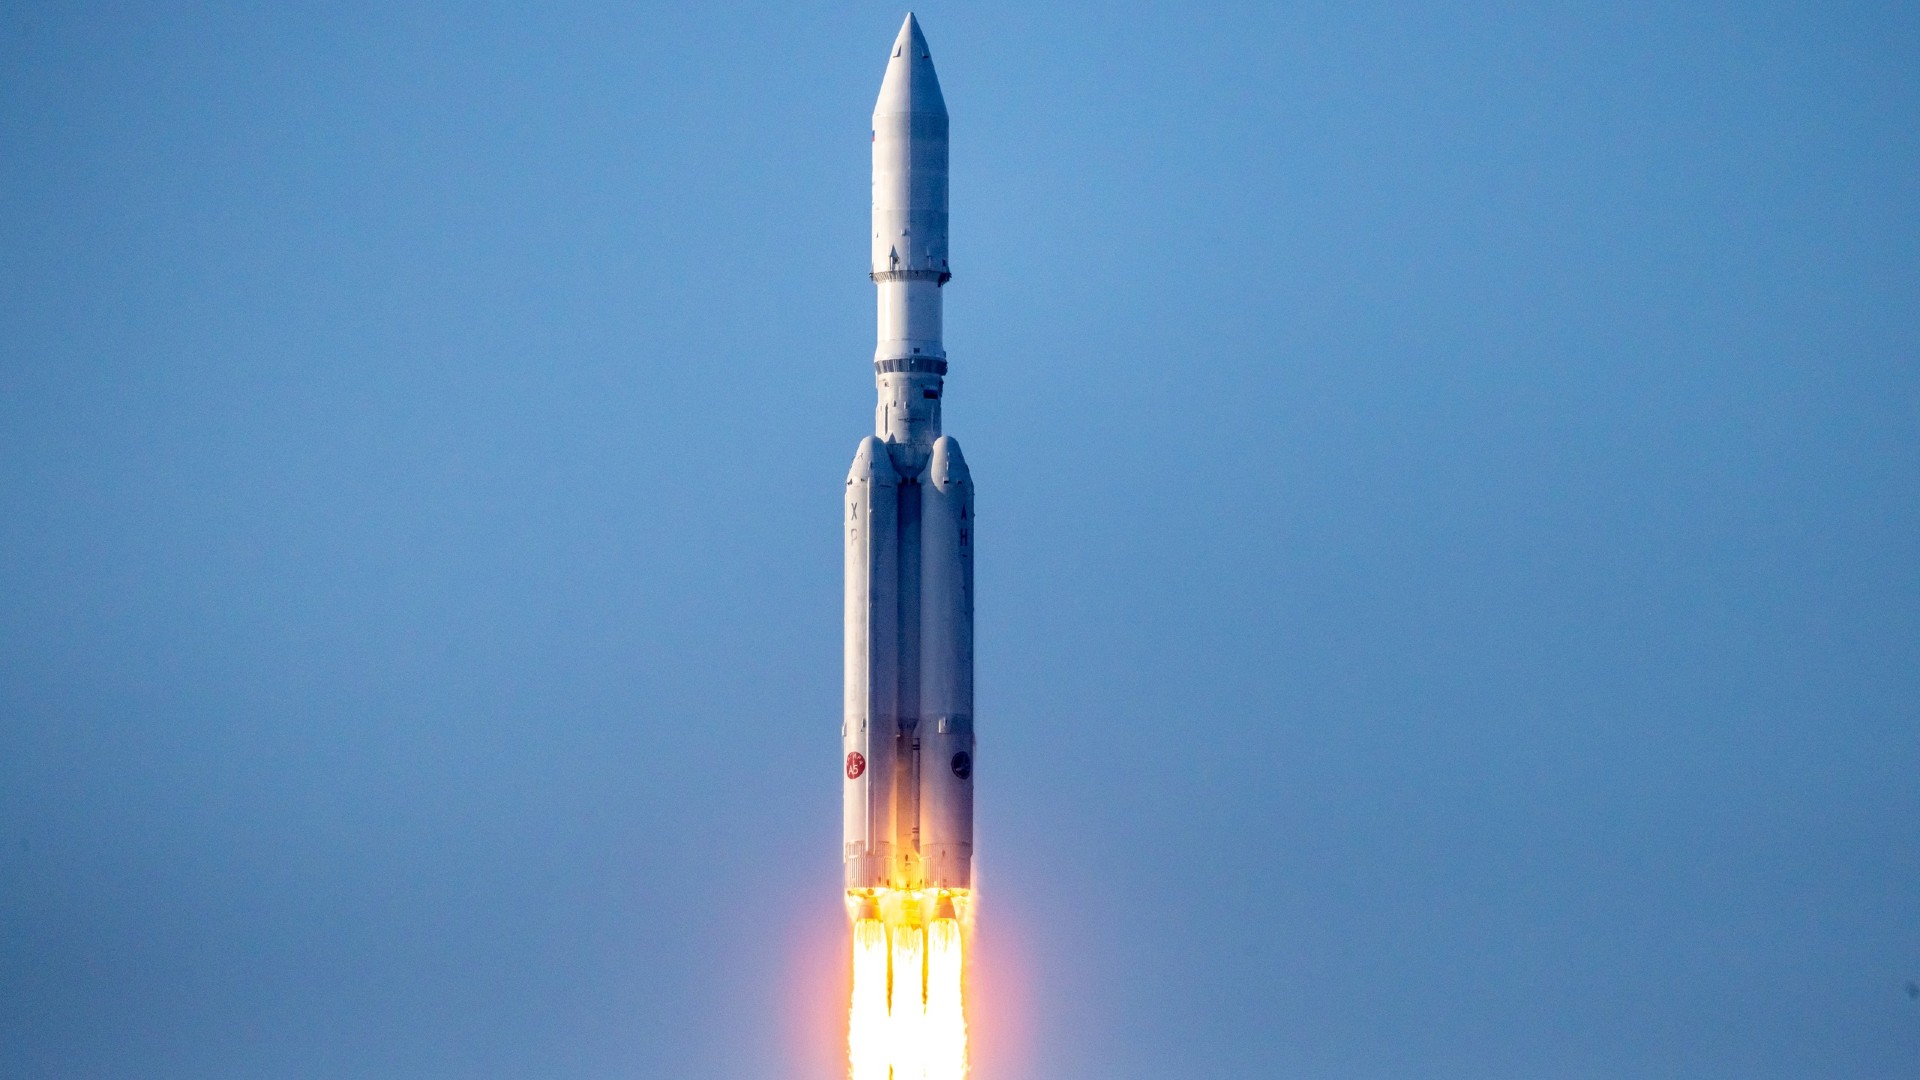 Большая белая ракета с четырьмя маленькими ускорителями взлетает с полосы огня.